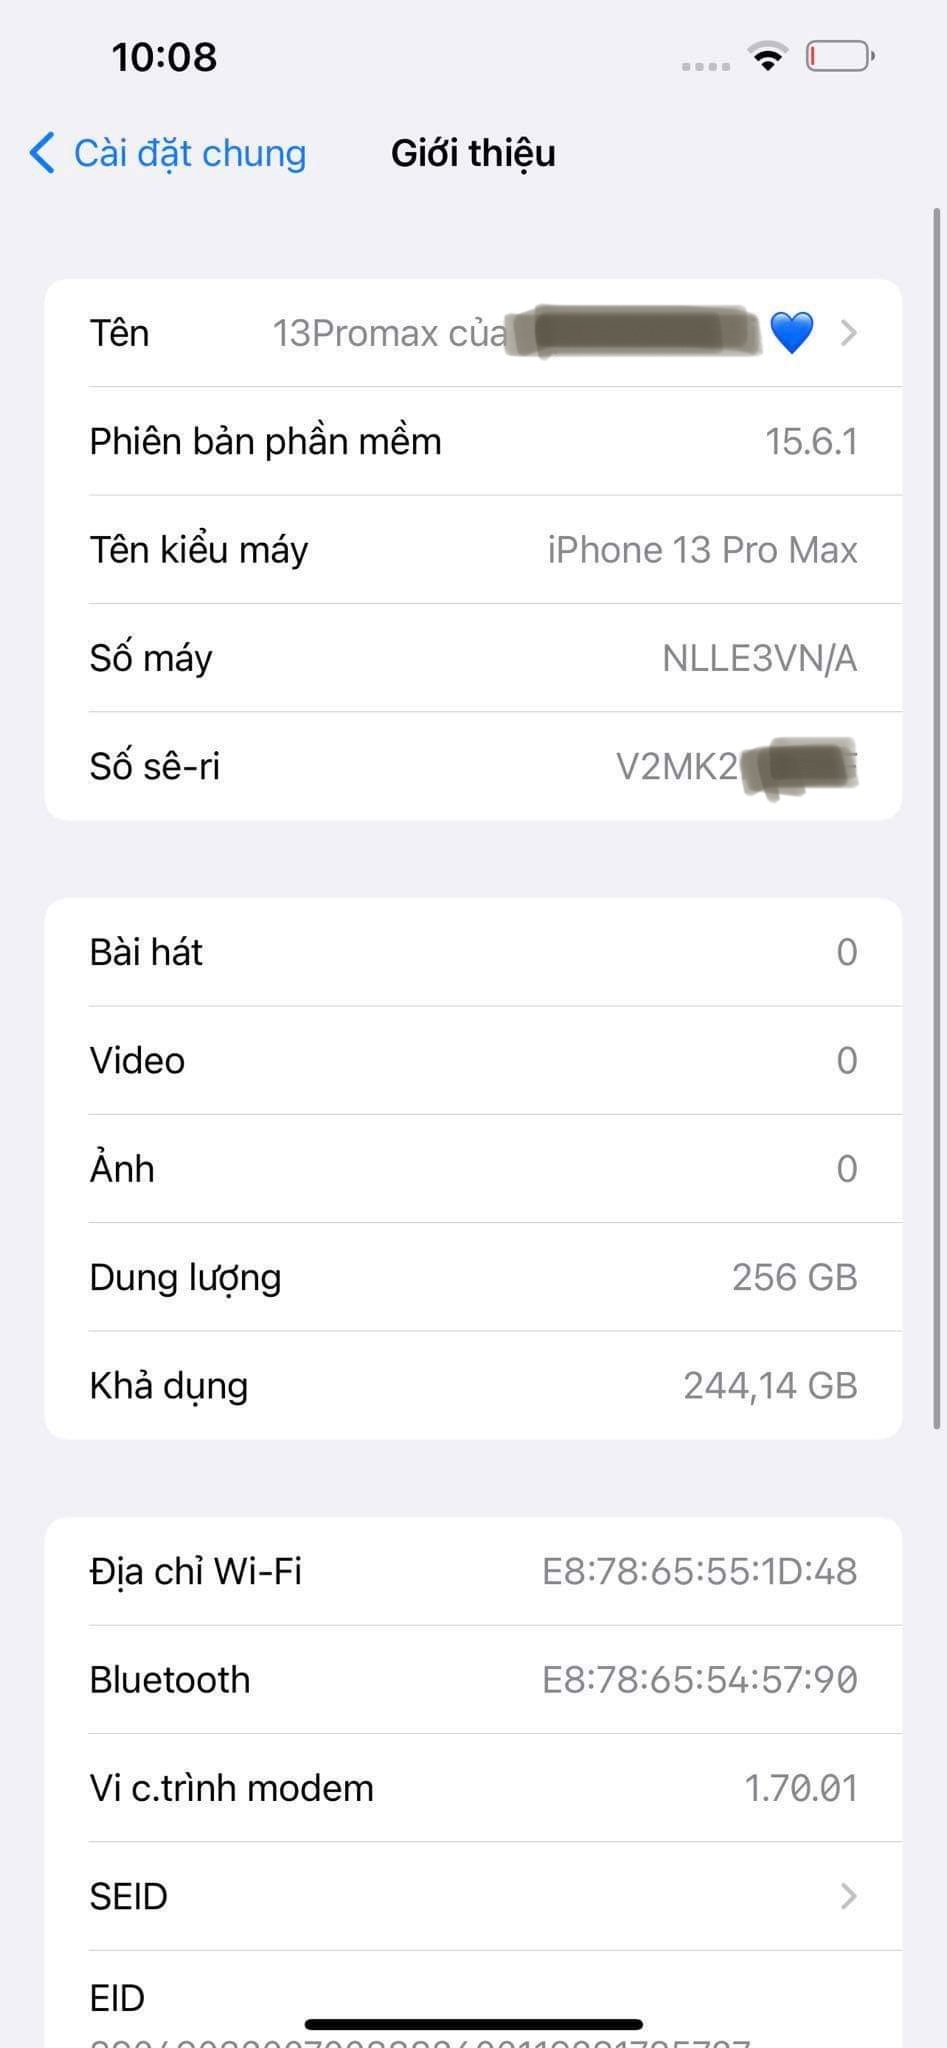 Người dùng Việt tìm mua iPhone 13 trả bảo hành giá rẻ - ảnh 2